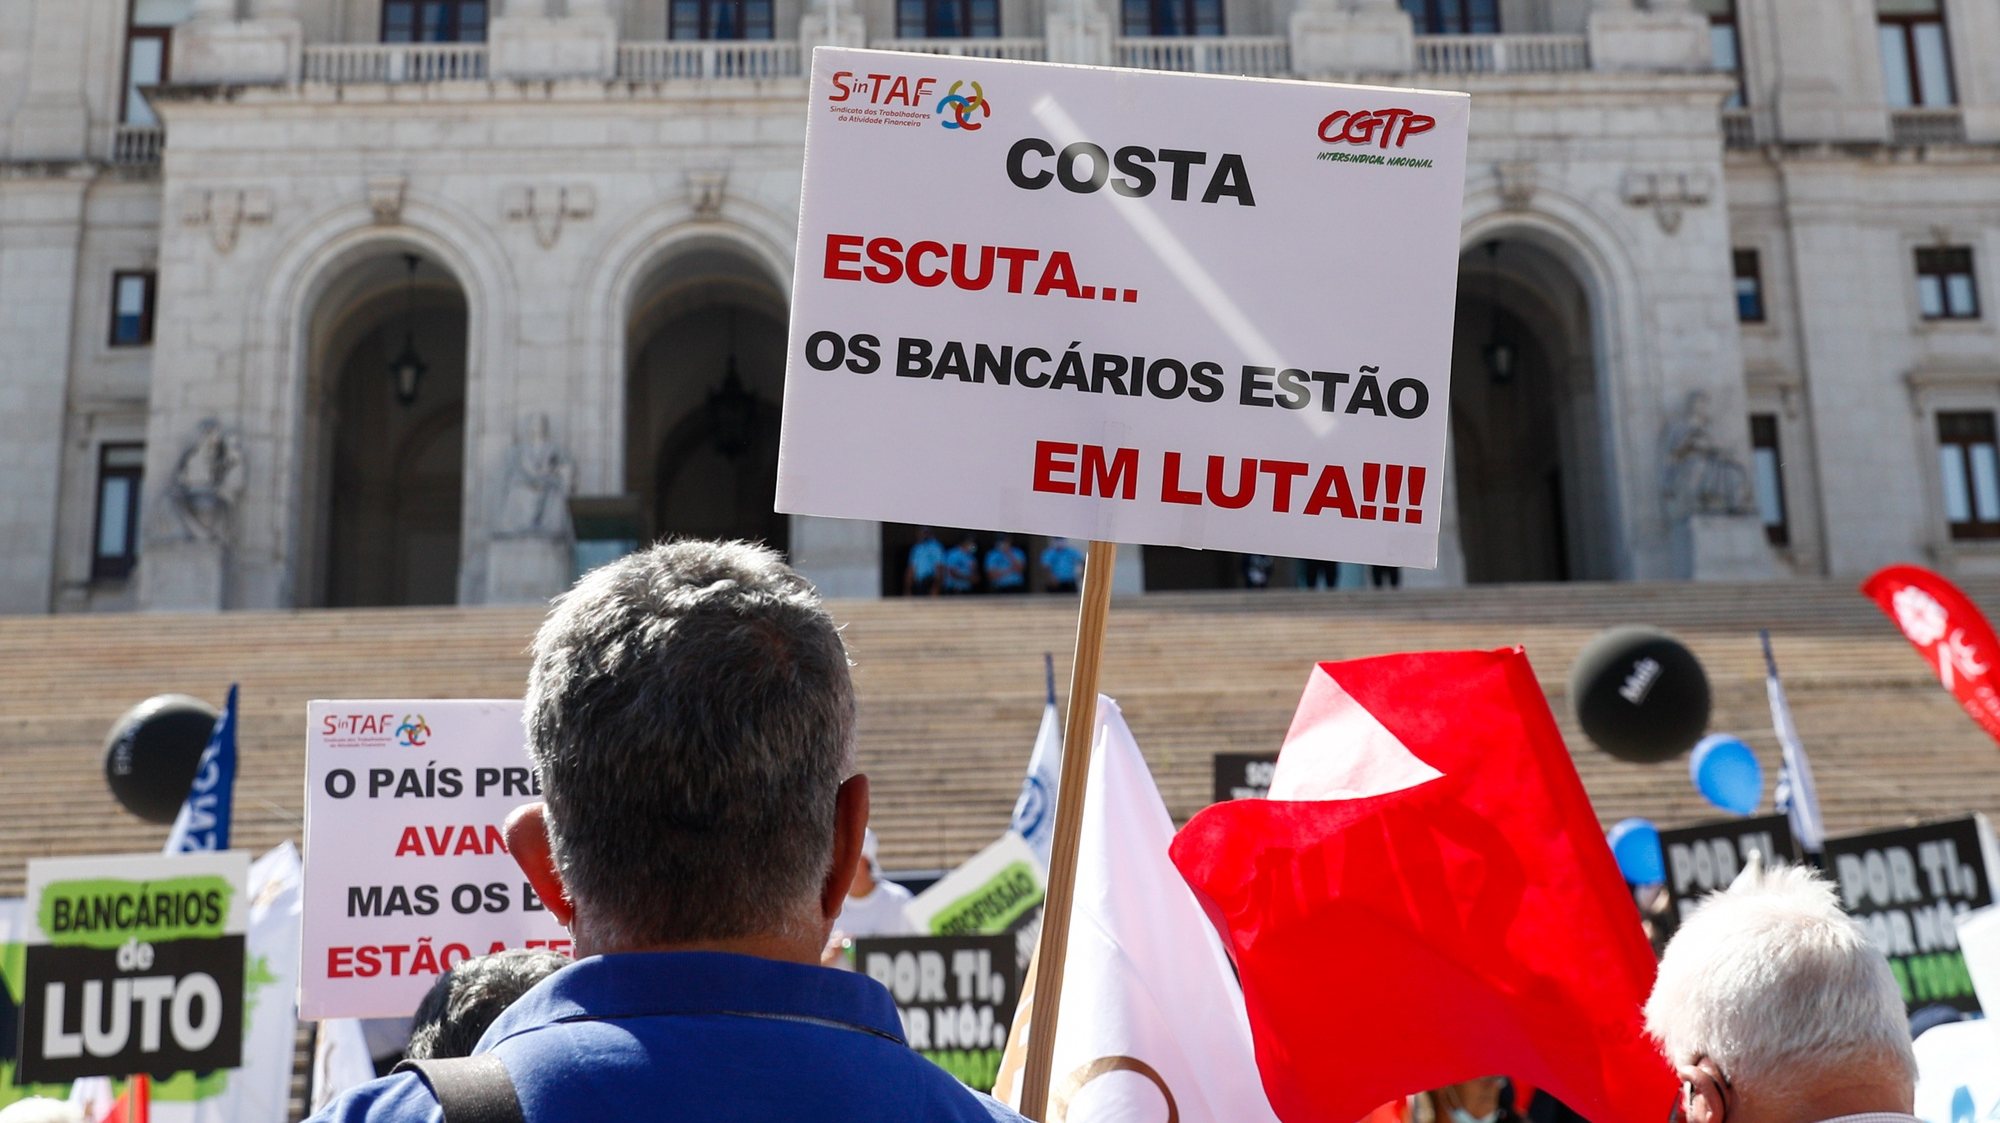 Manifestação nacional de bancários em protesto contra despedimentos,  junto à Assembleia da República, em Lisboa, 13 de julho de 2021. A manifestação foi convocada pelos sete sindicatos do setor (SNQTB - Sindicato Nacional dos Quadros e Técnicos Bancários; MAIS Sindicato - Sindicato do Setor Financeiro; SBN - Sindicato dos Bancários do Norte; SIB - Sindicato Independente da Banca; SBC - Sindicato dos Bancários do Centro; STEC - Sindicato do Grupo CGD; e SinTAF - Sindicato dos Trabalhadores da Actividade Financeira). ANTÓNIO COTRIM/LUSA